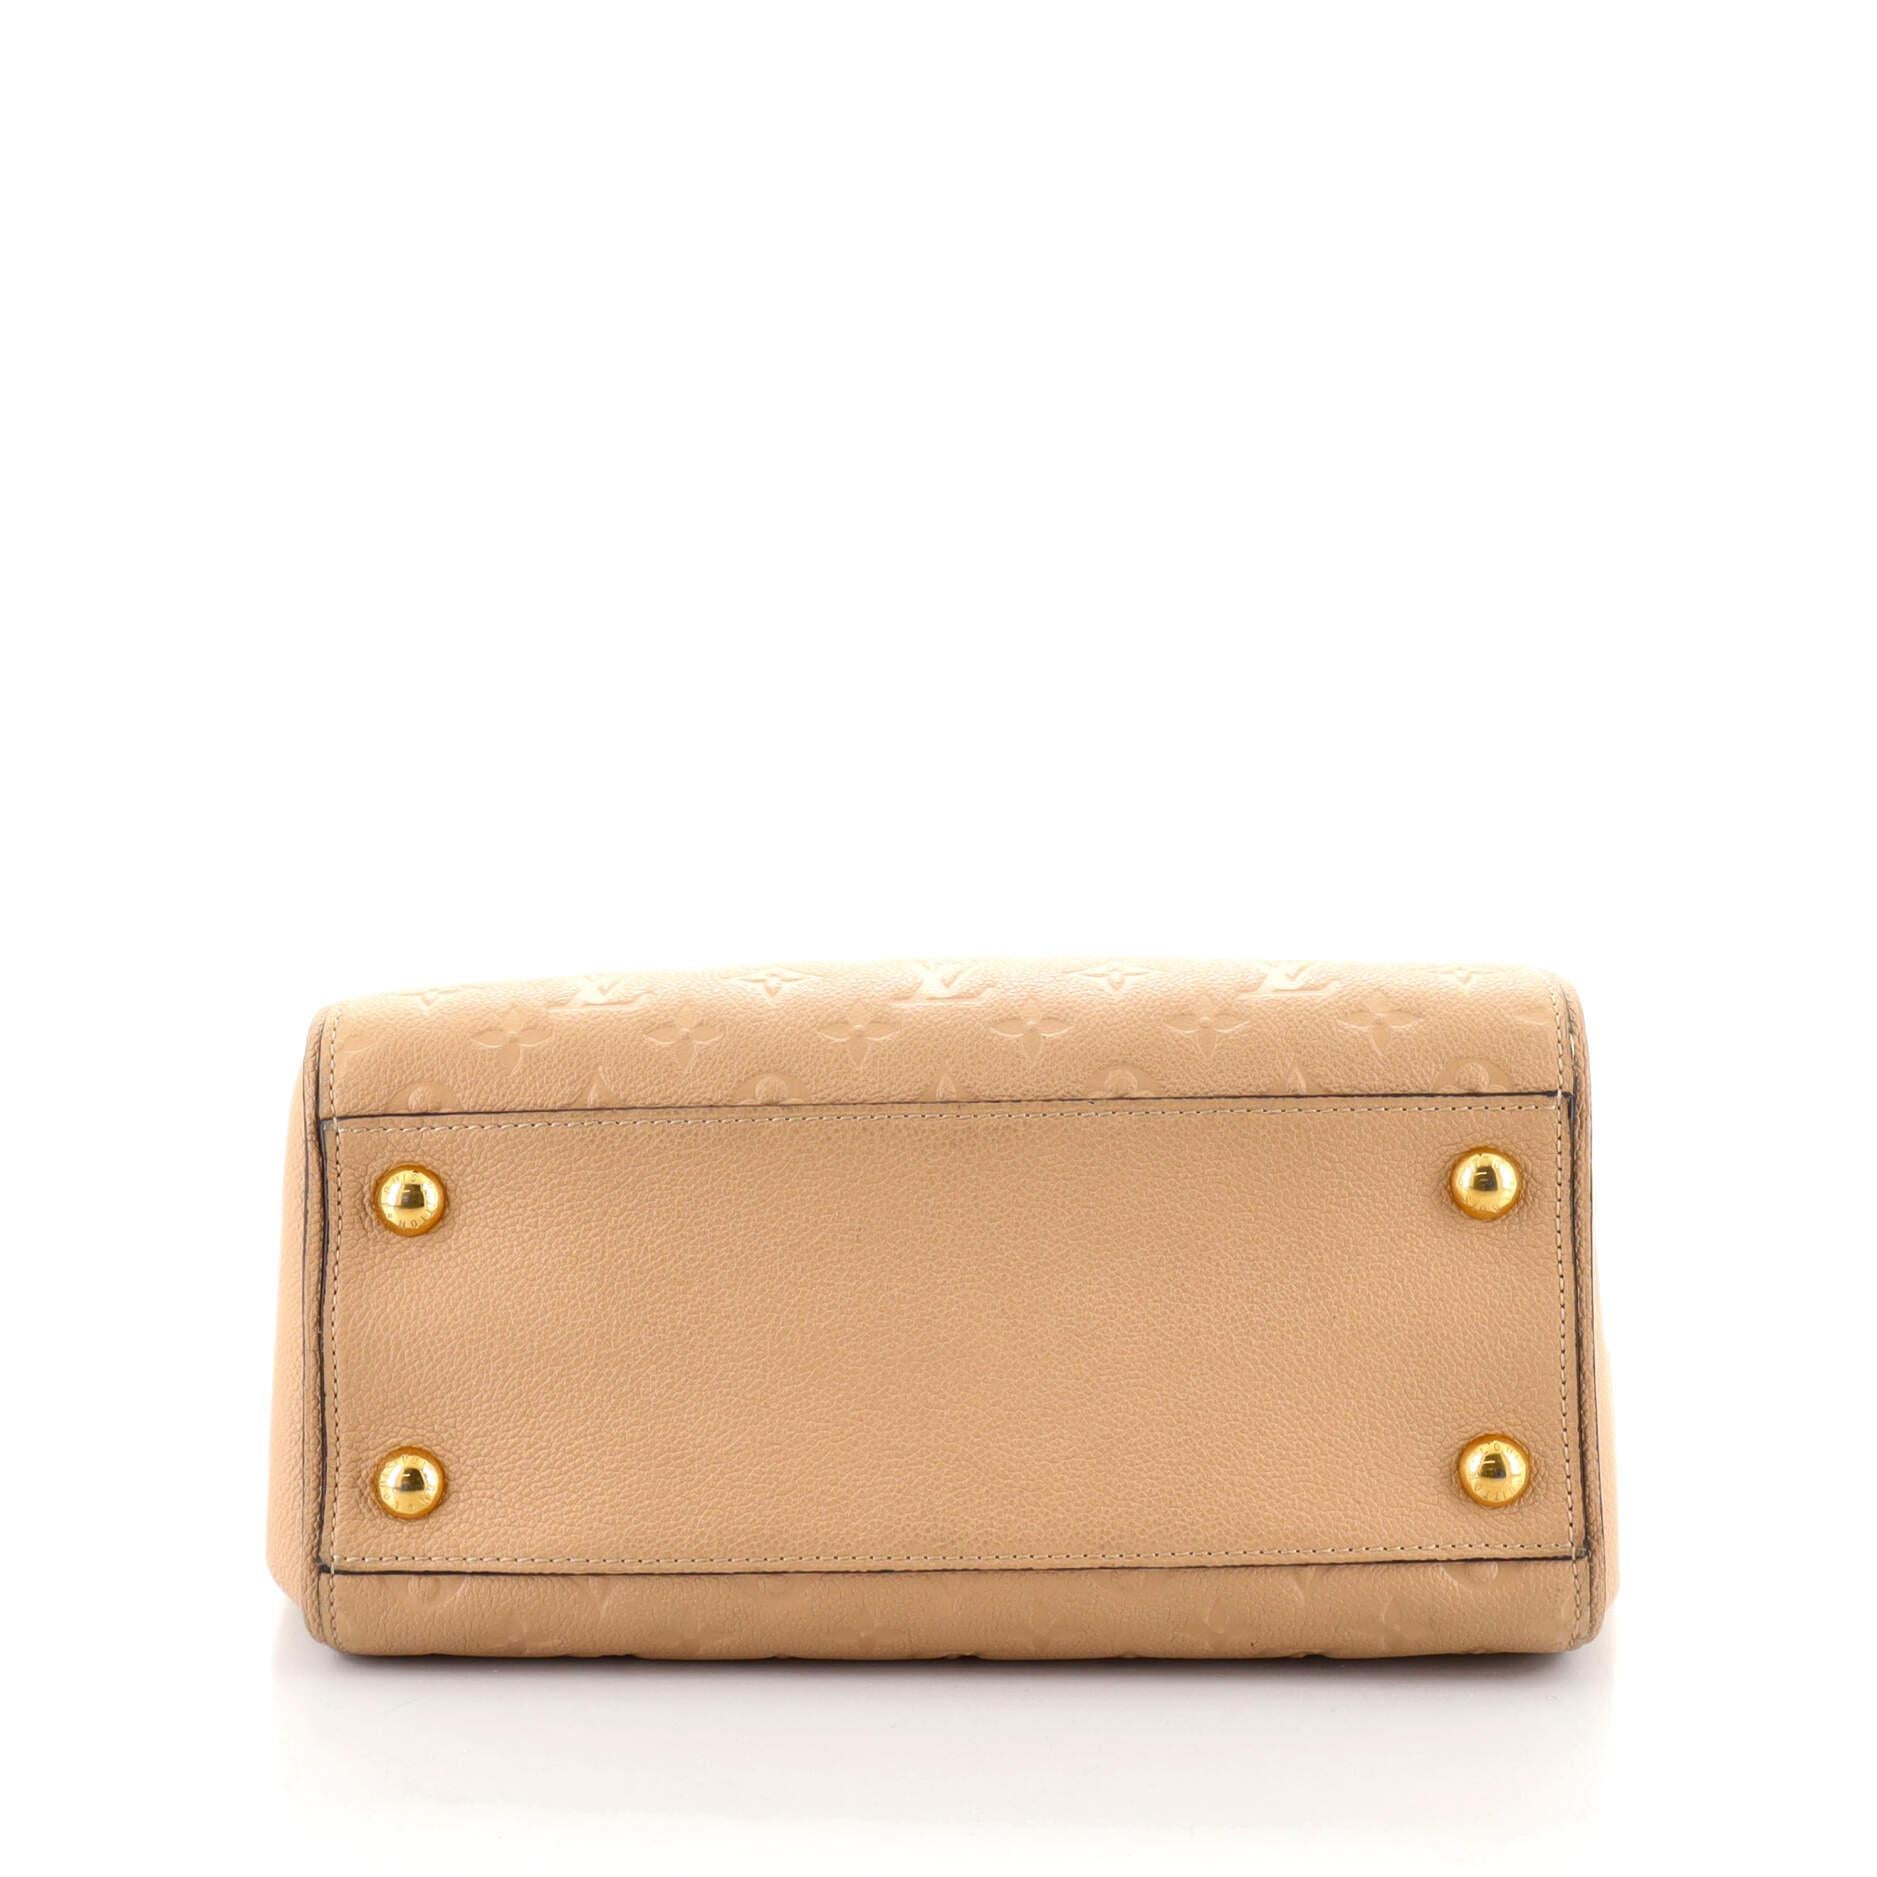 Beige Louis Vuitton Trocadero Handbag Monogram Empreinte Leather